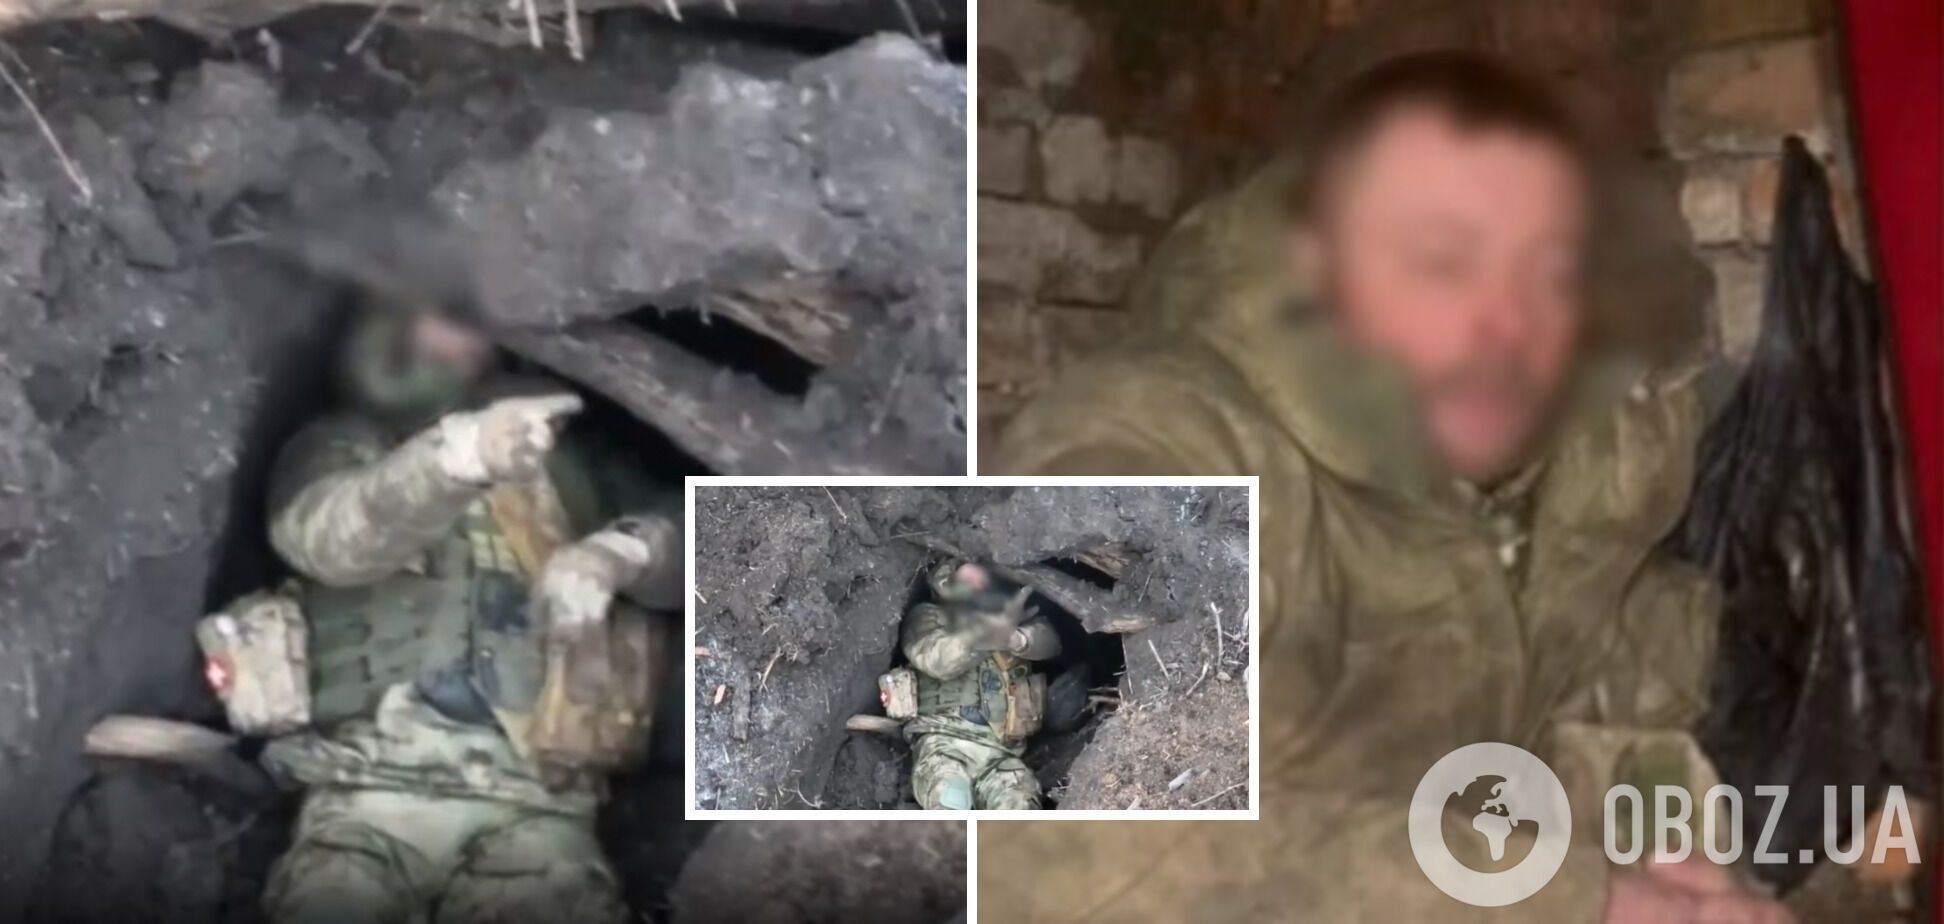 'Военные технологии в действии': российский пехотинец сдался в плен украинскому дрону, чтобы выжить. Видео